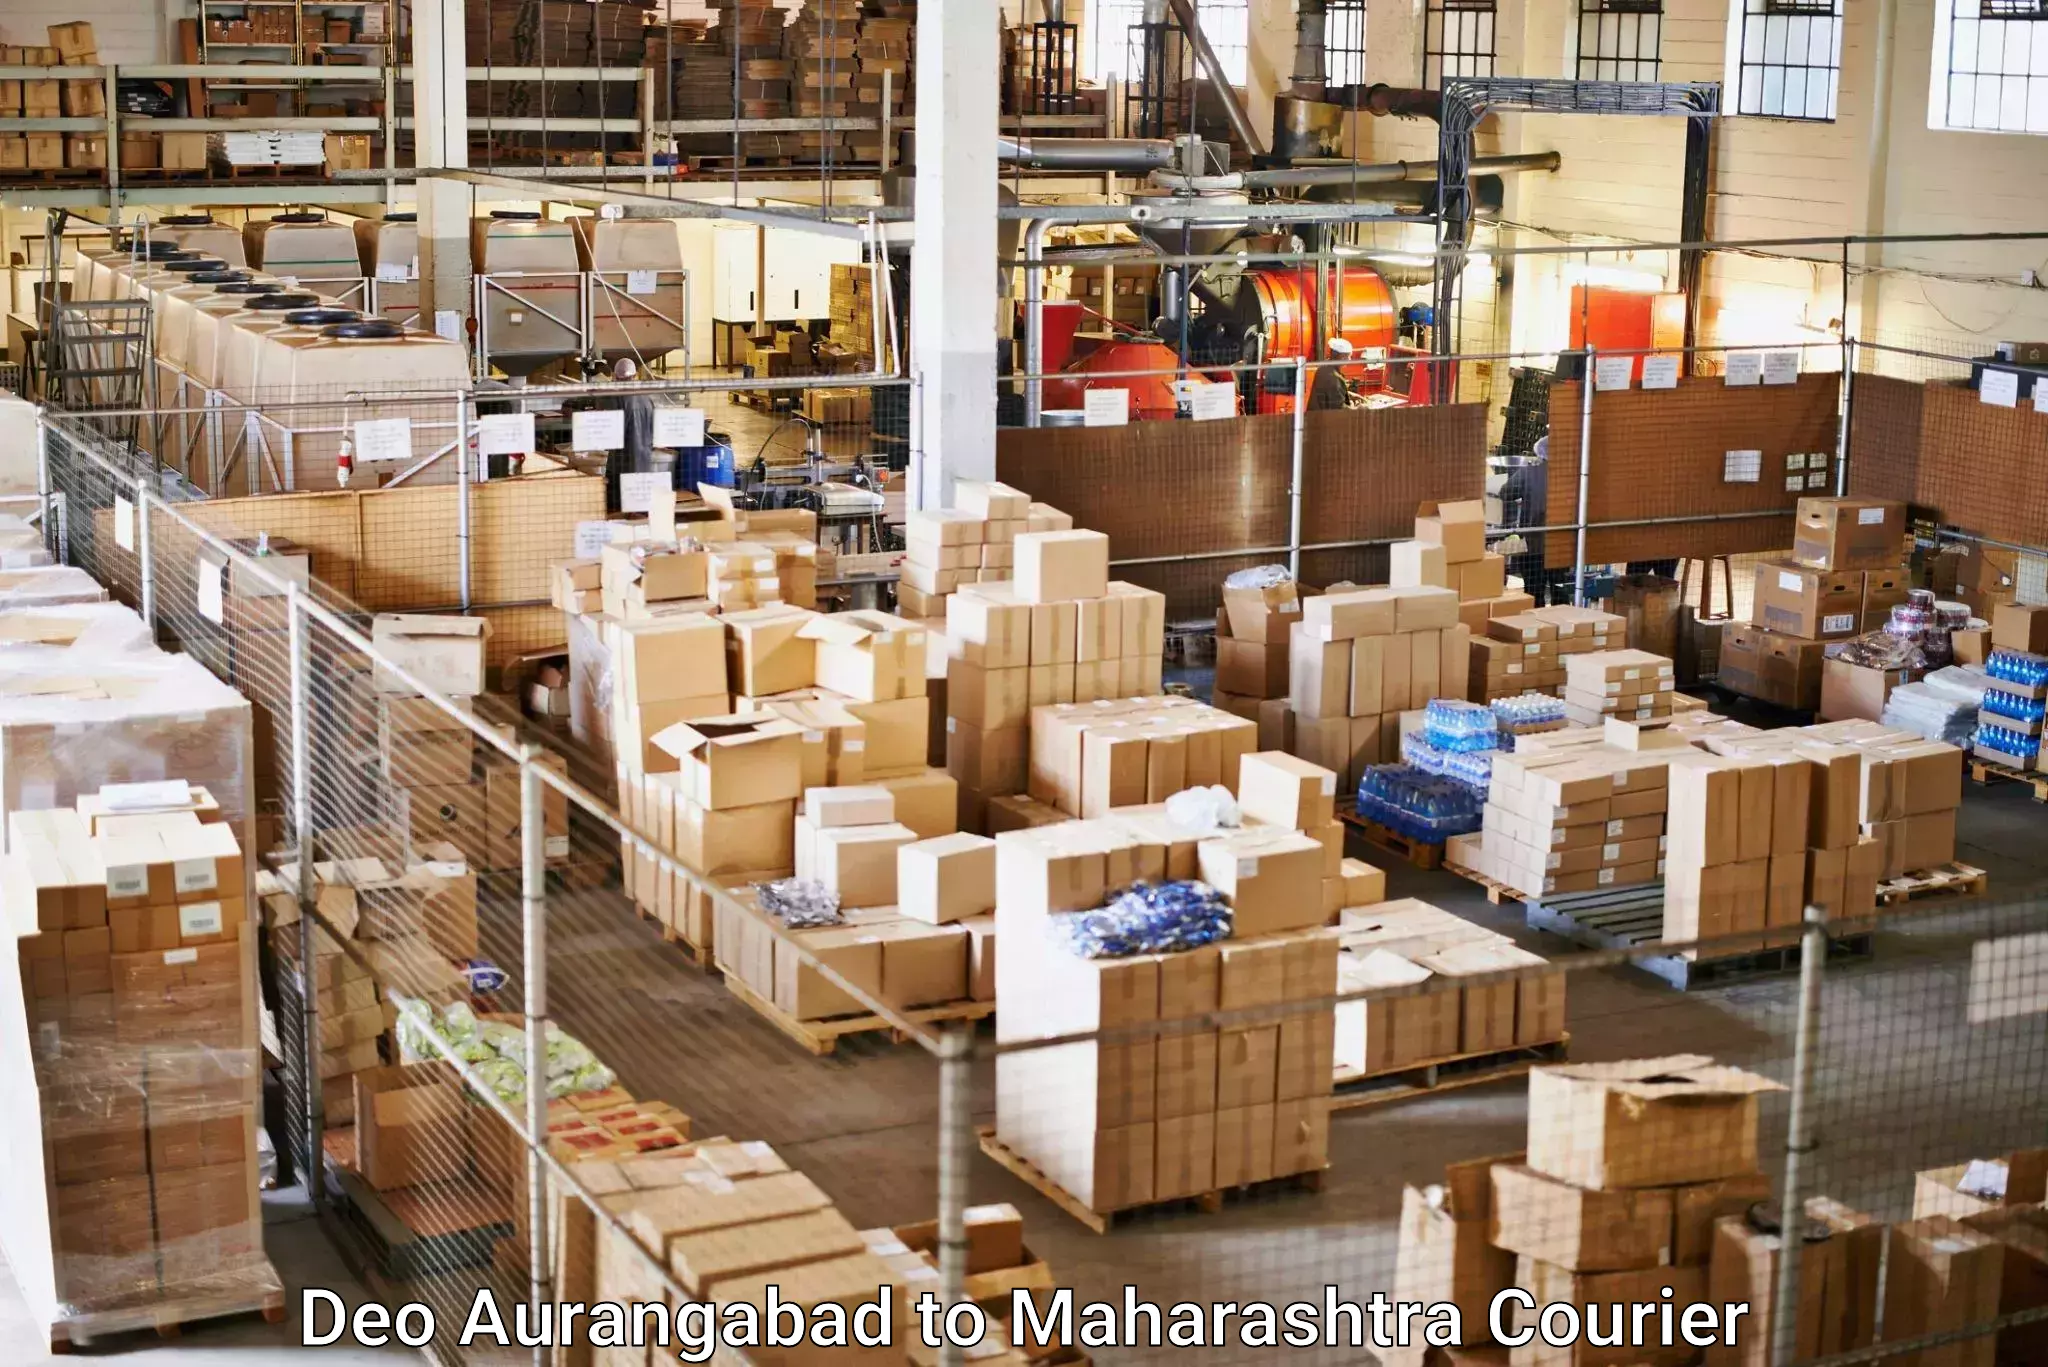 Doorstep delivery service Deo Aurangabad to Pusad